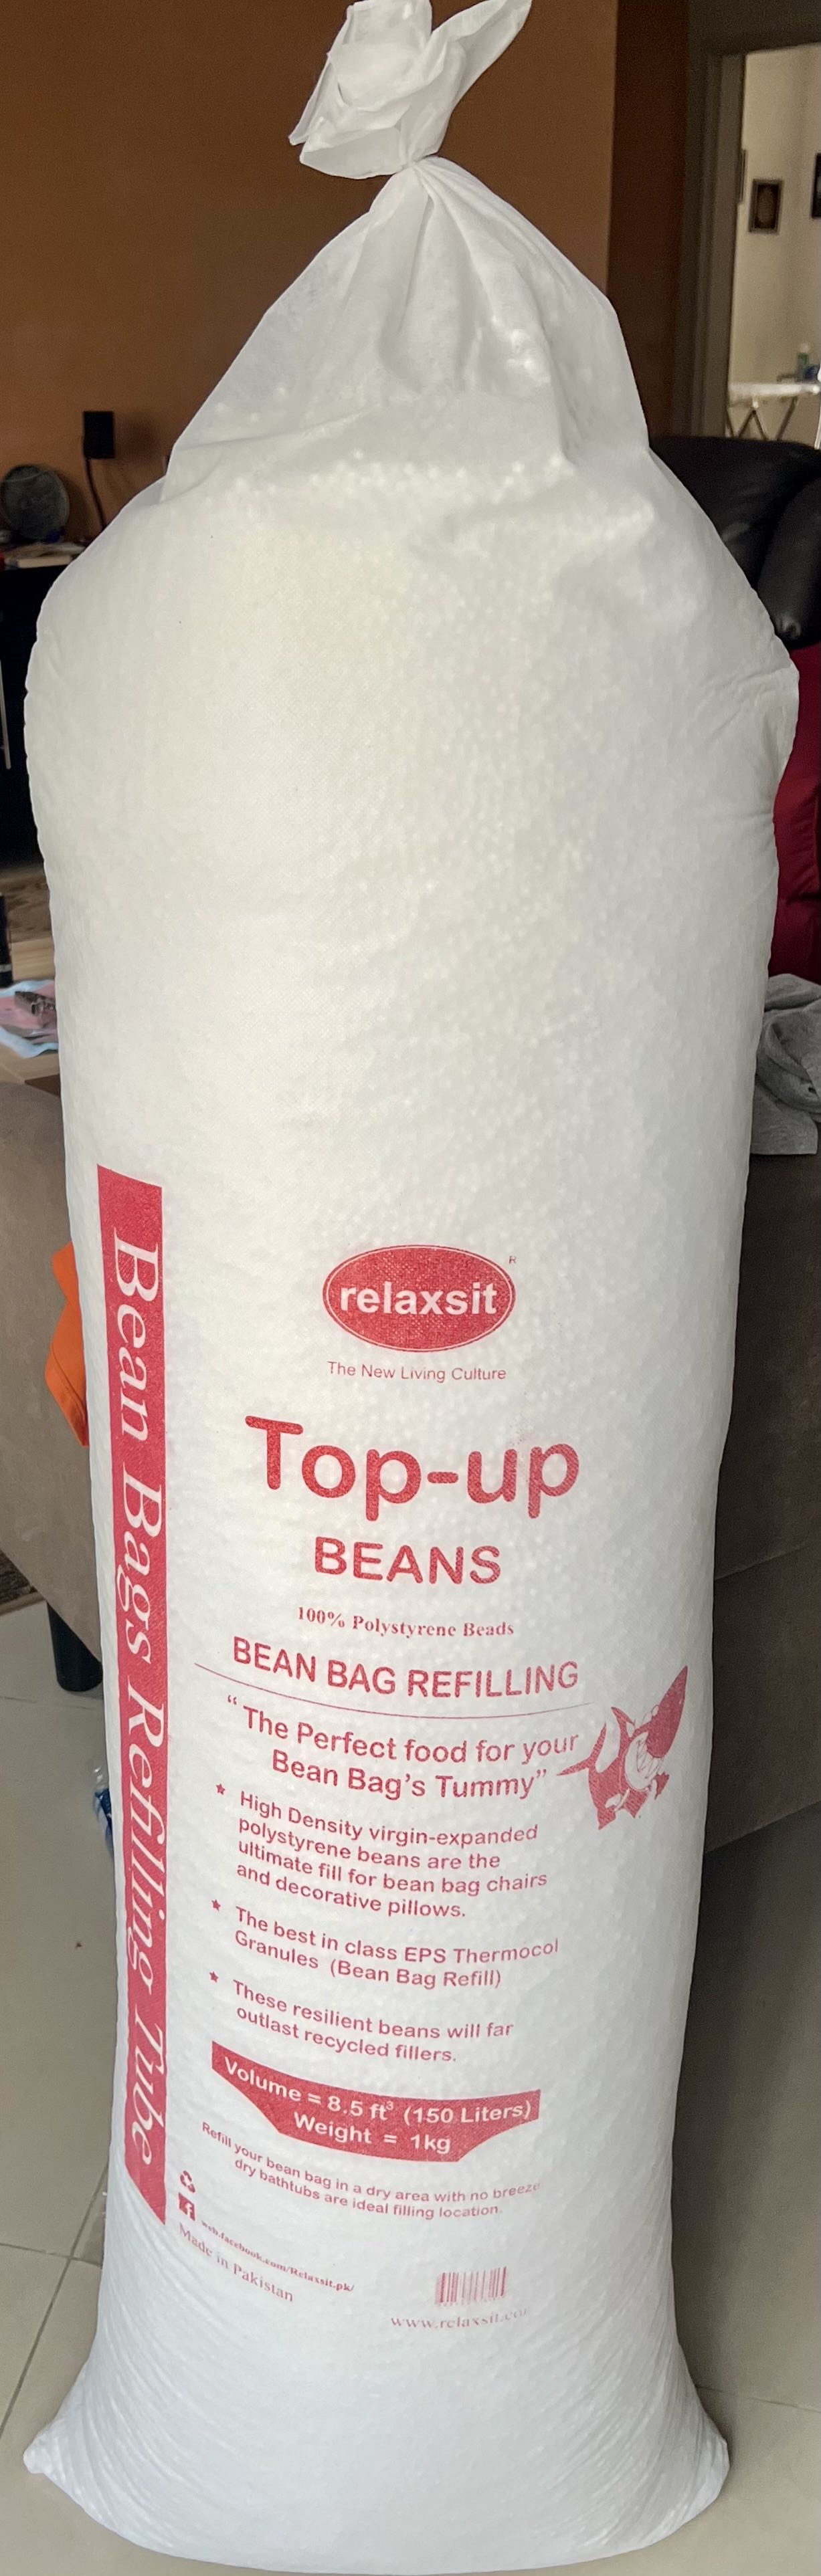 Relaxsit beans refilling Polystyrene Beads refill -BeanBag